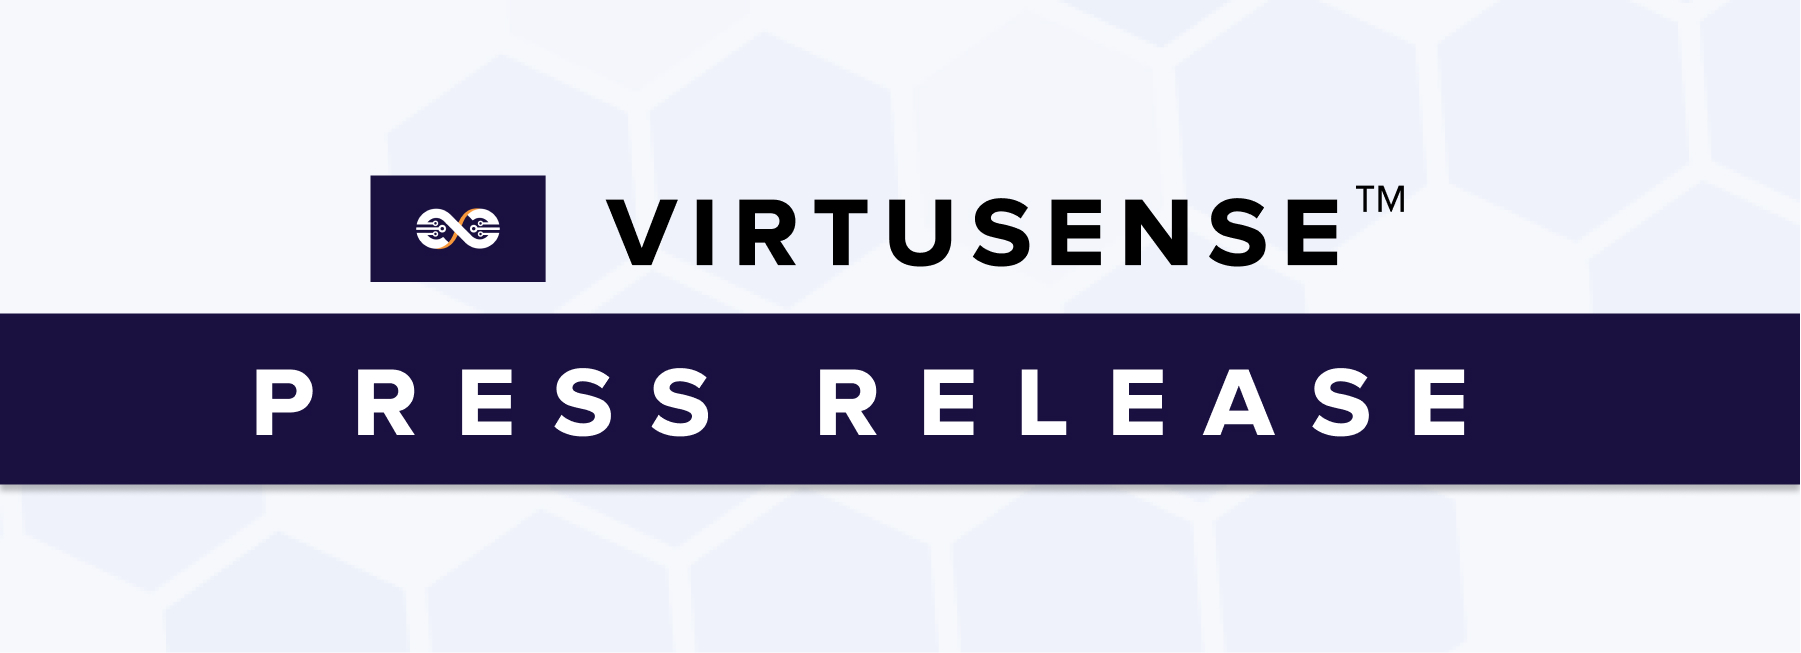 banner reading: VirtuSense Press Release 